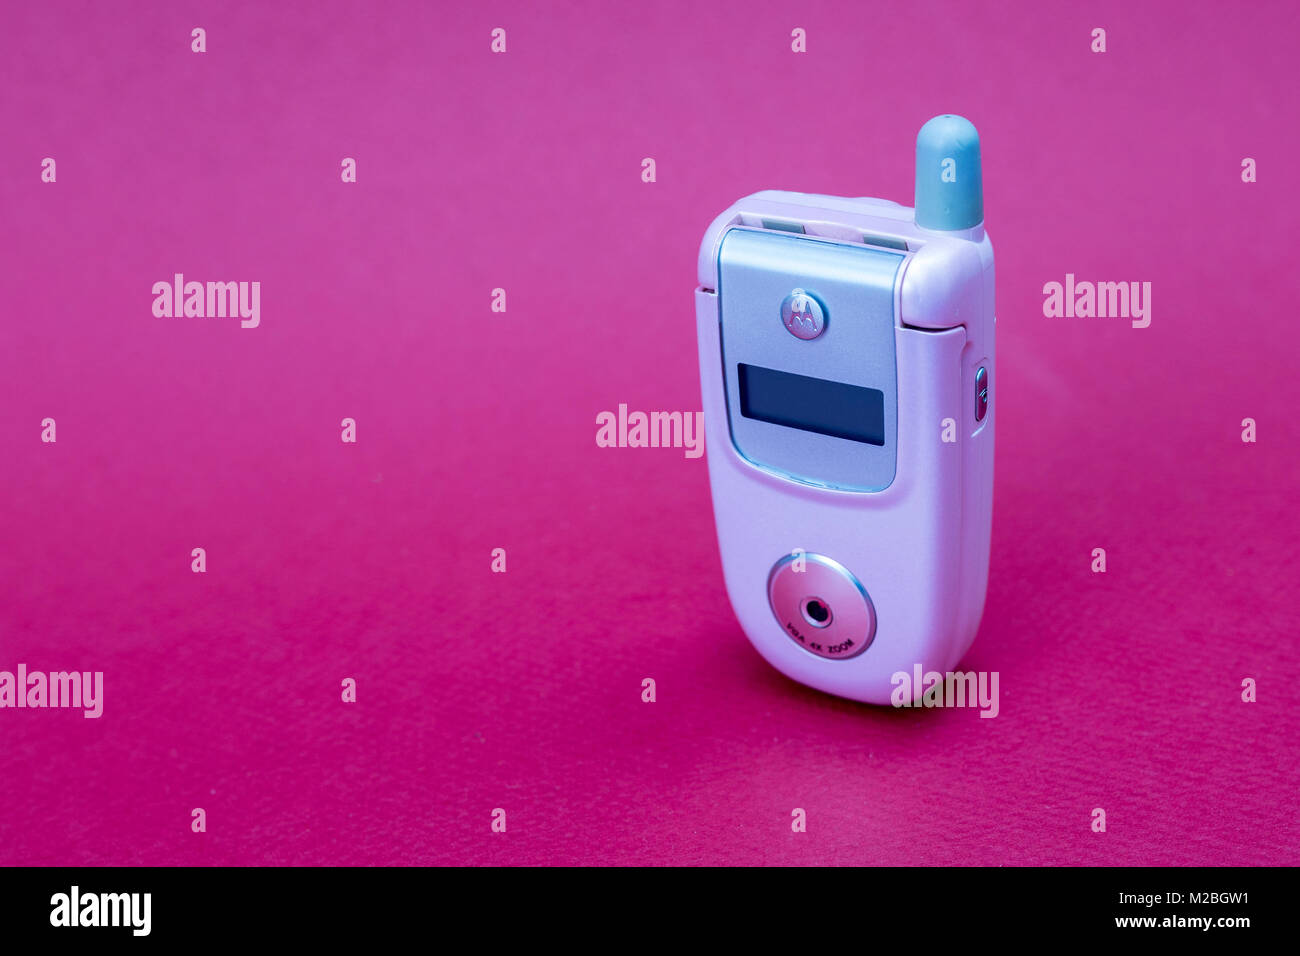 Raffreddare e classic Motorola V220 rosa flip retrò cellulare o telefono cellulare isolata contro uno sfondo rosso Foto Stock